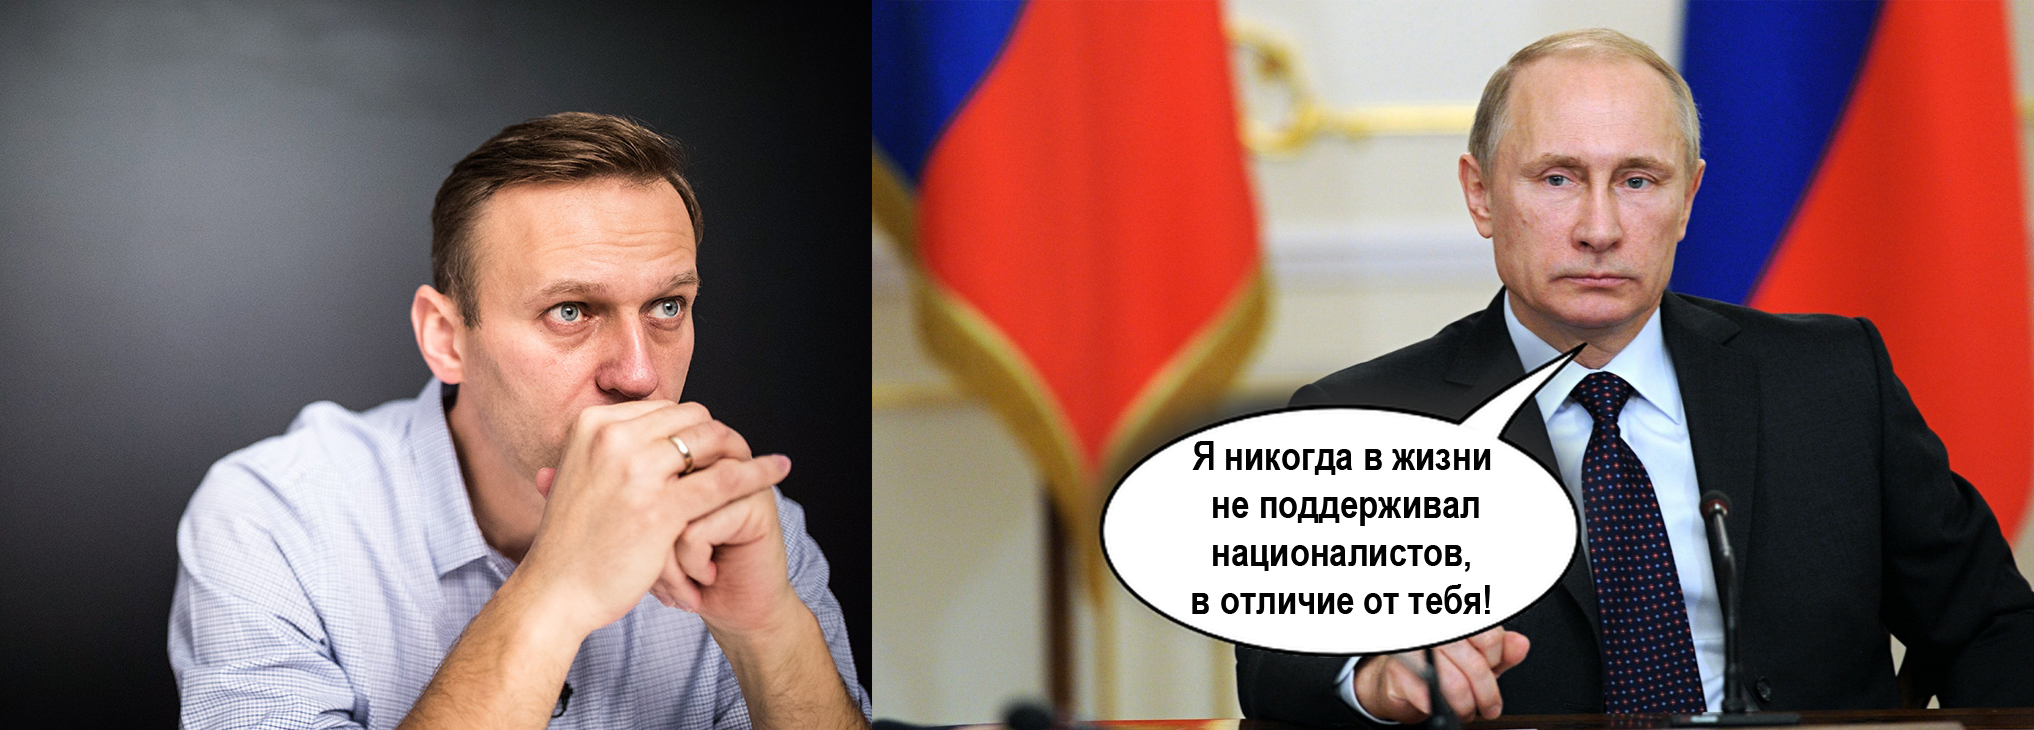 Ненавижу президента. Фото Путина с Навальным.